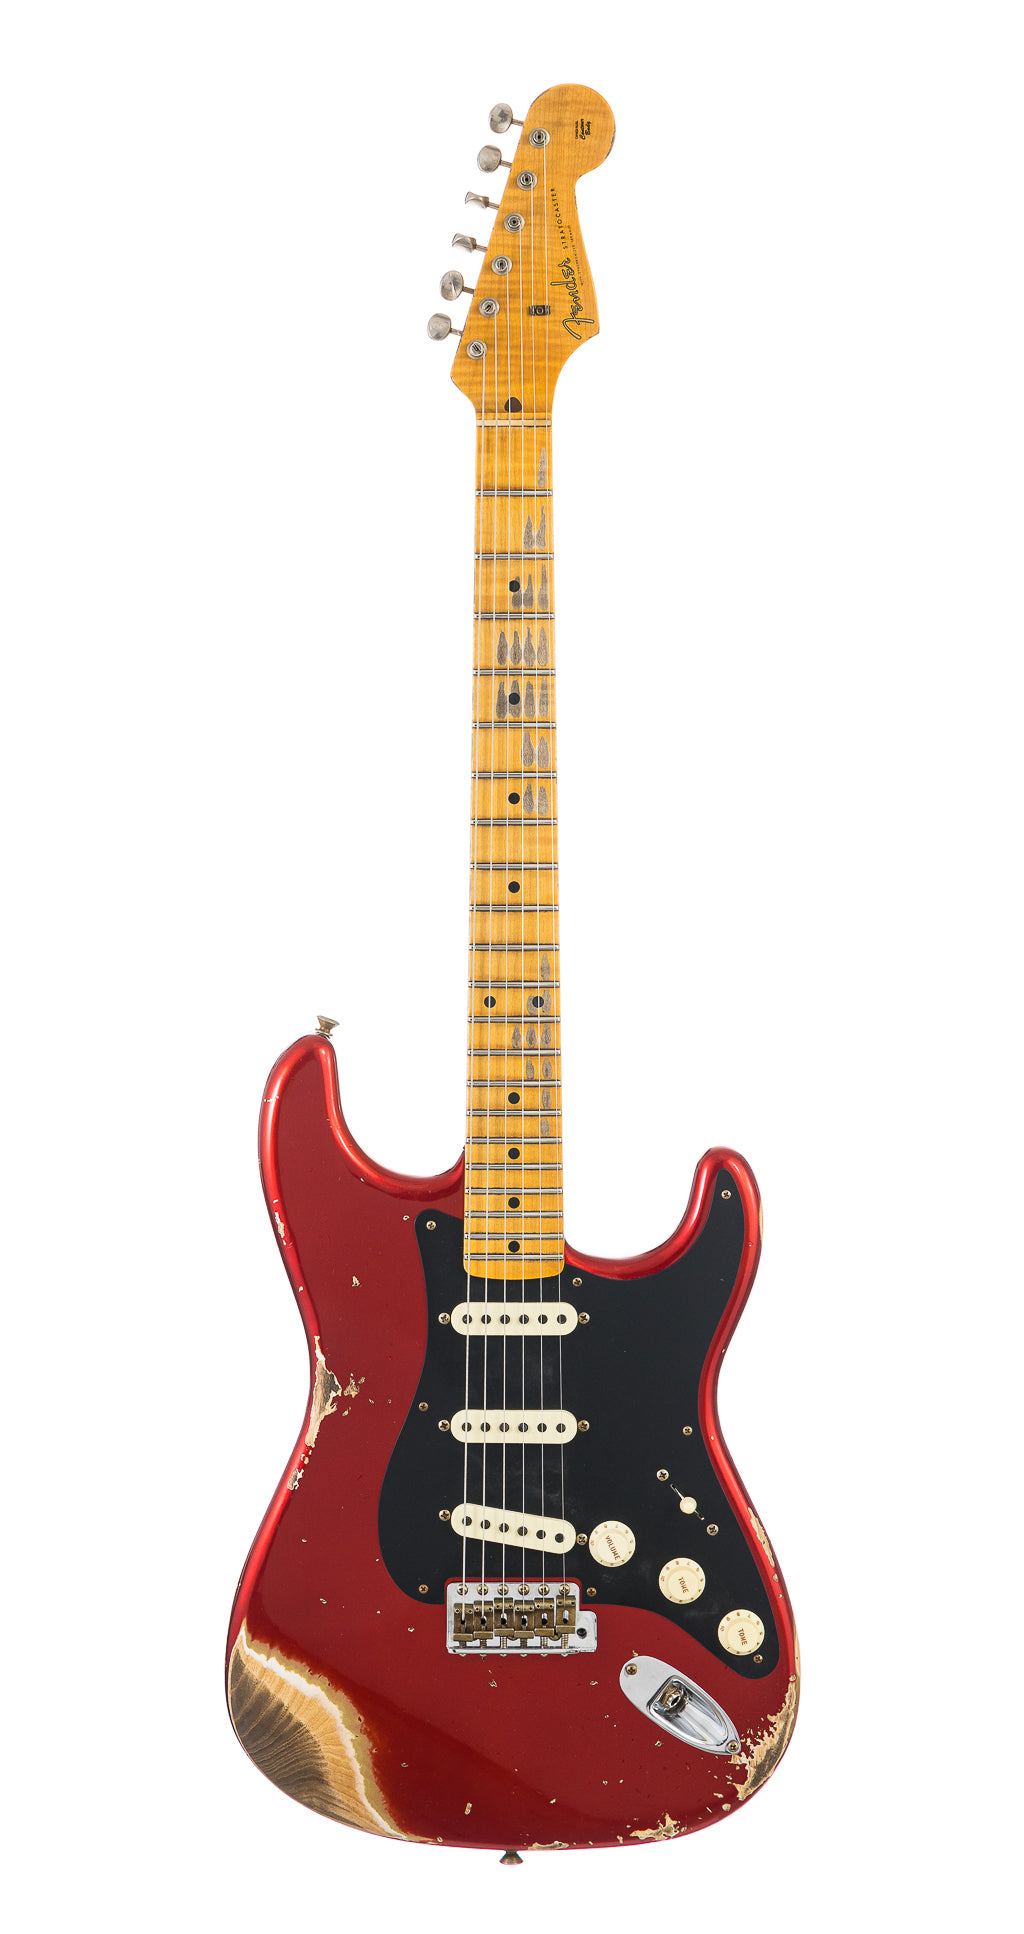 Fender Custom Shop 1957 Stratocaster Heavy Relic, Lark Guitars Custom Run -  Candy Apple Red (774)